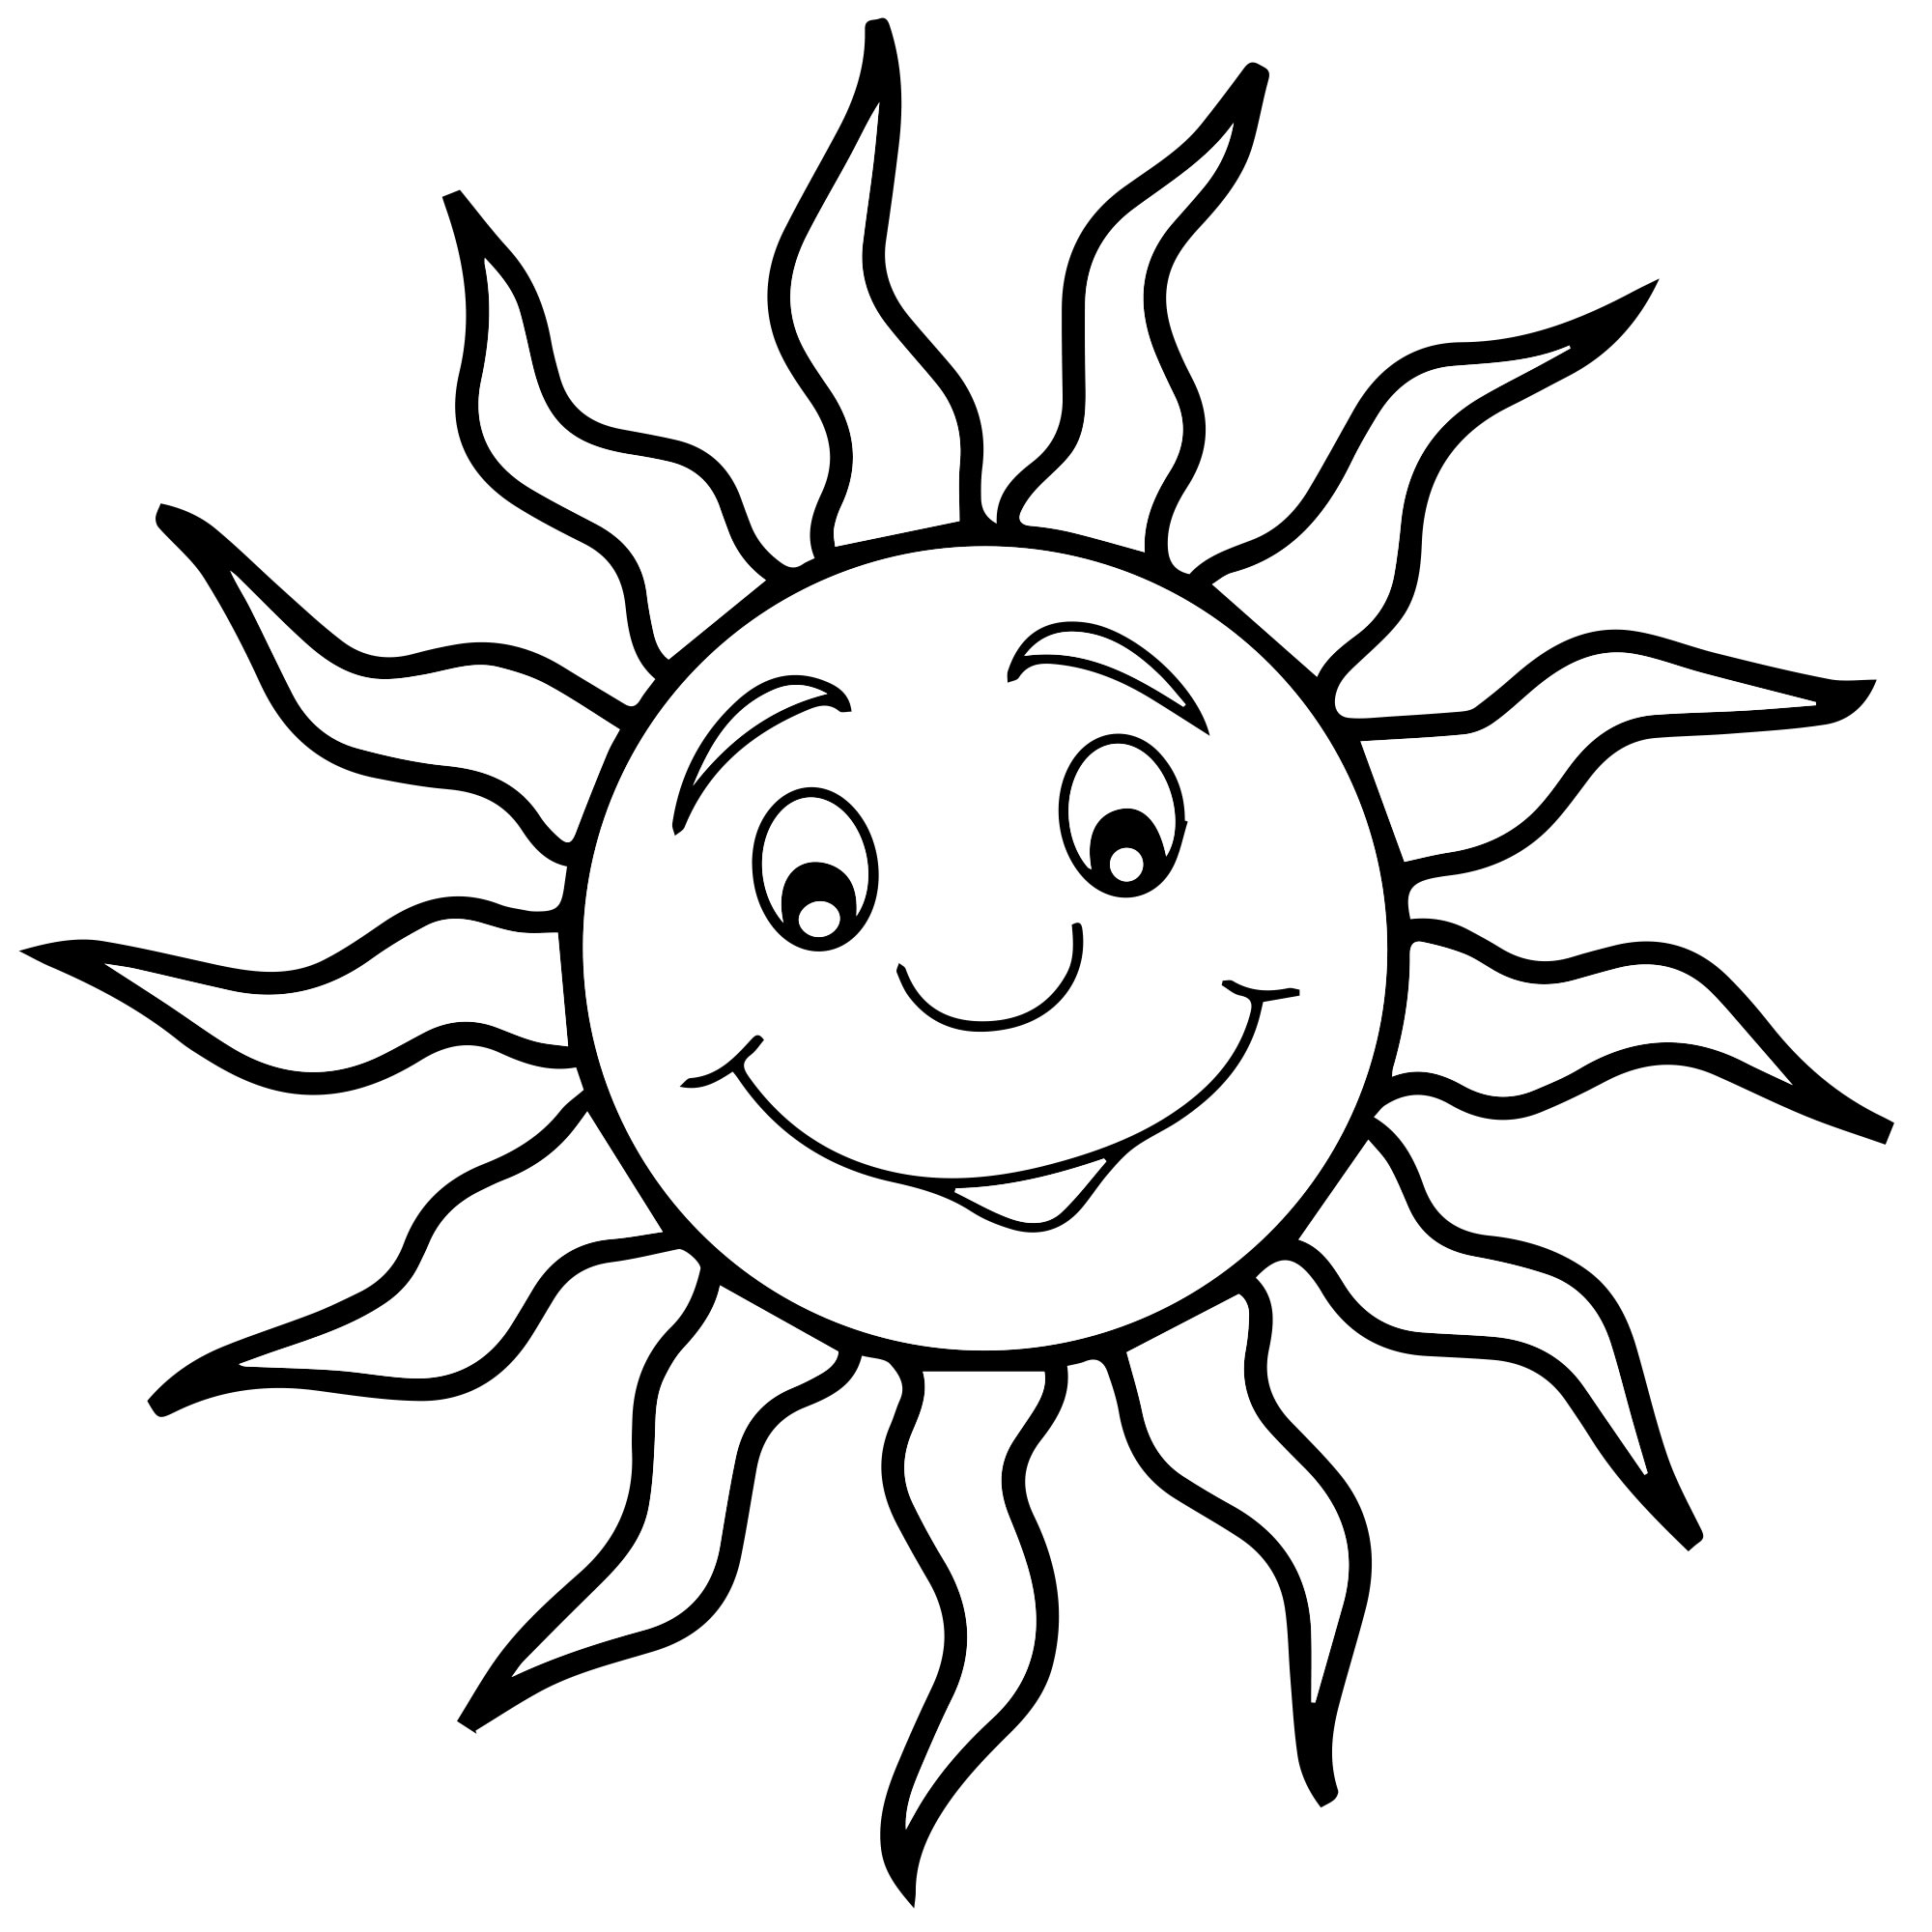 Солнце с глазками раскраска для детей